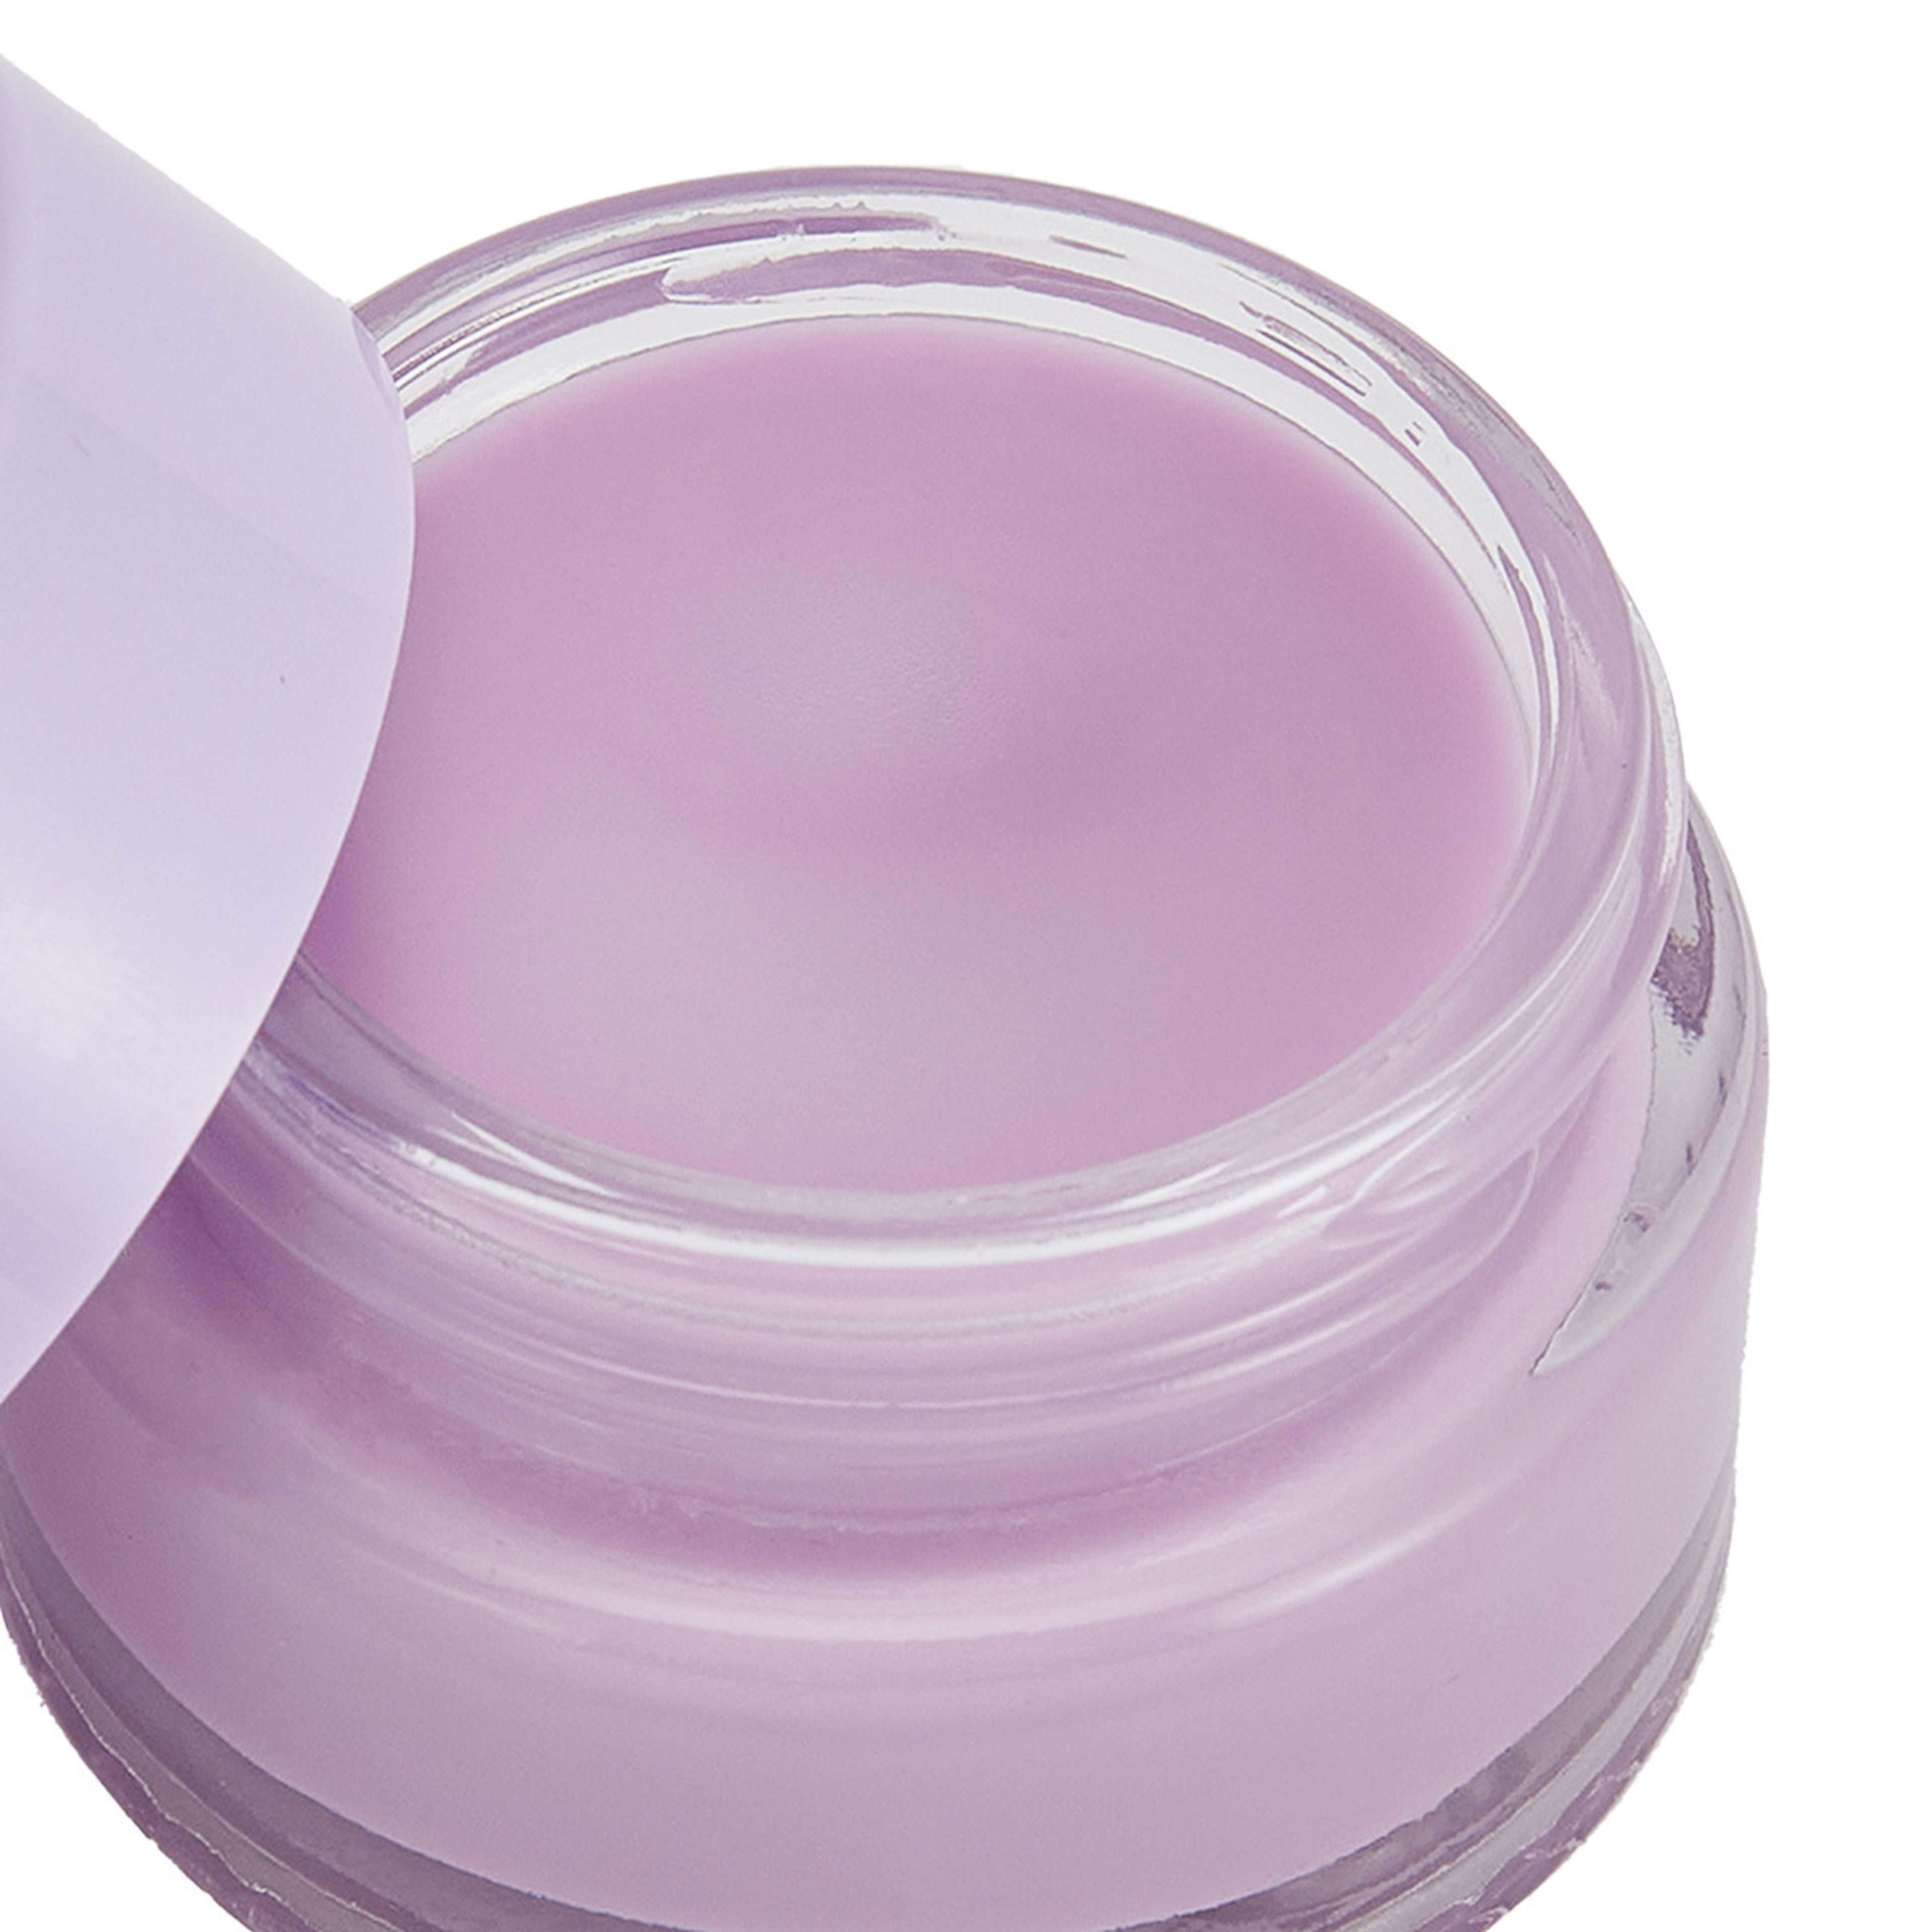 Overnight Lip Mask 20ml - Lavender Oil - Kmart